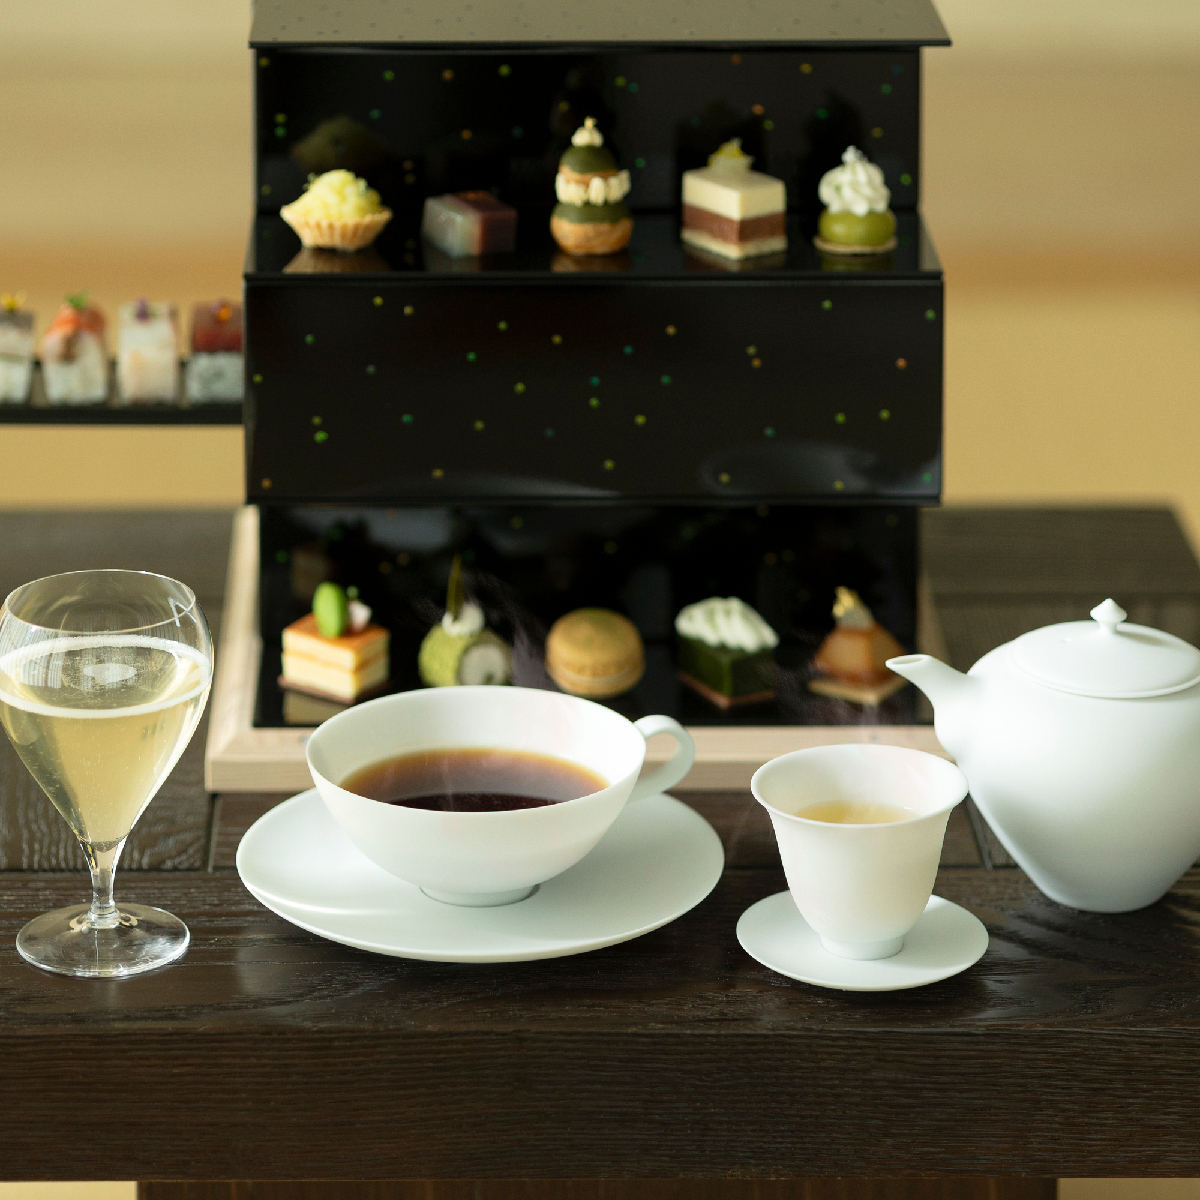 【星のや東京】 風薫る季節に新茶や旬の果物を堪能する「Nipponキュイジーヌ 新緑アフタヌーンティー」が新登場